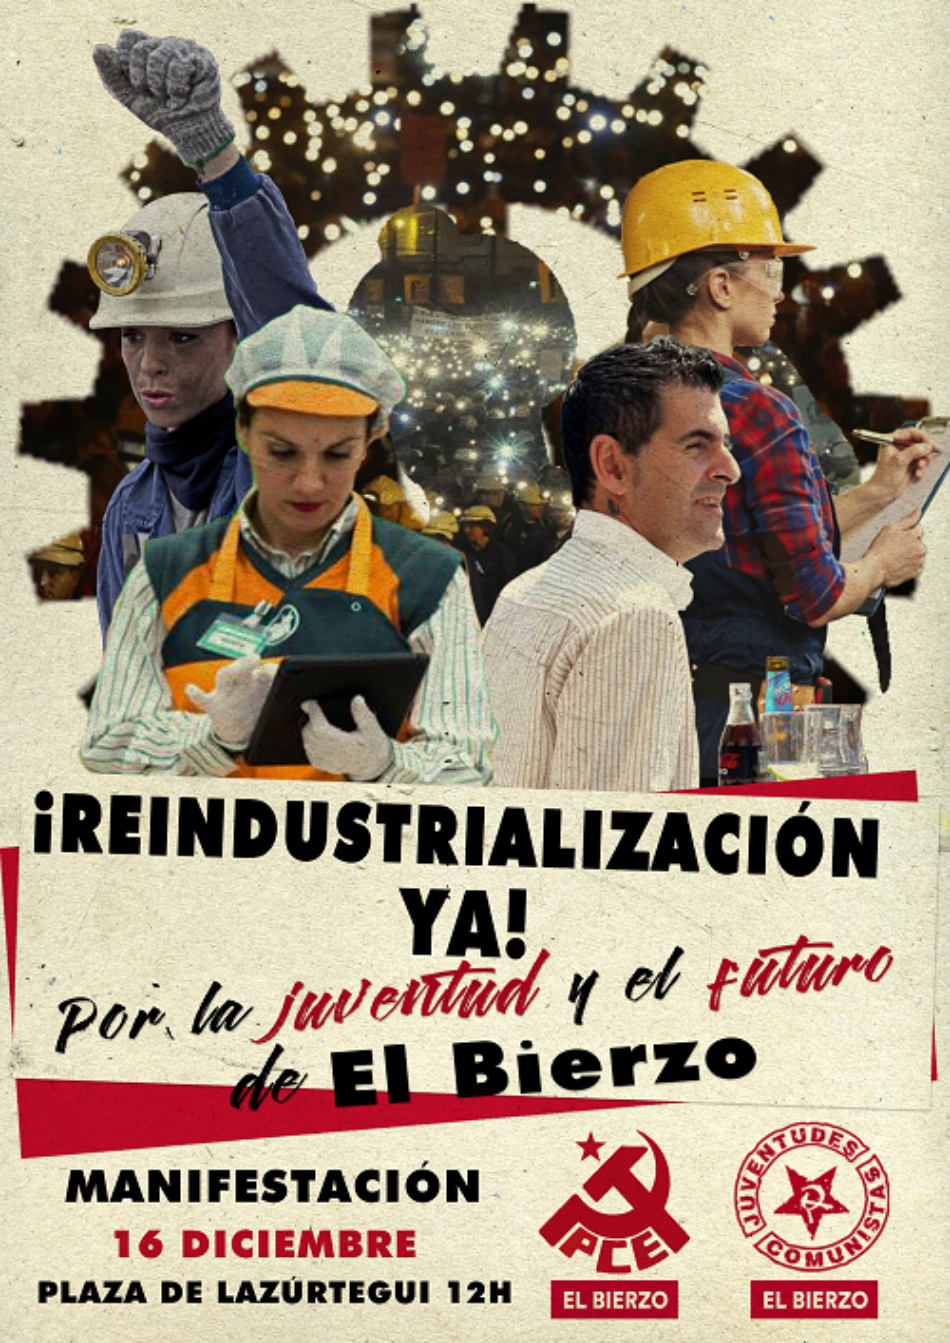 El PCE y la UJCE de El Bierzo apoyan el 16-D exigiendo “¡Reindustrialización Ya! Por la juventud y el futuro de El Bierzo”